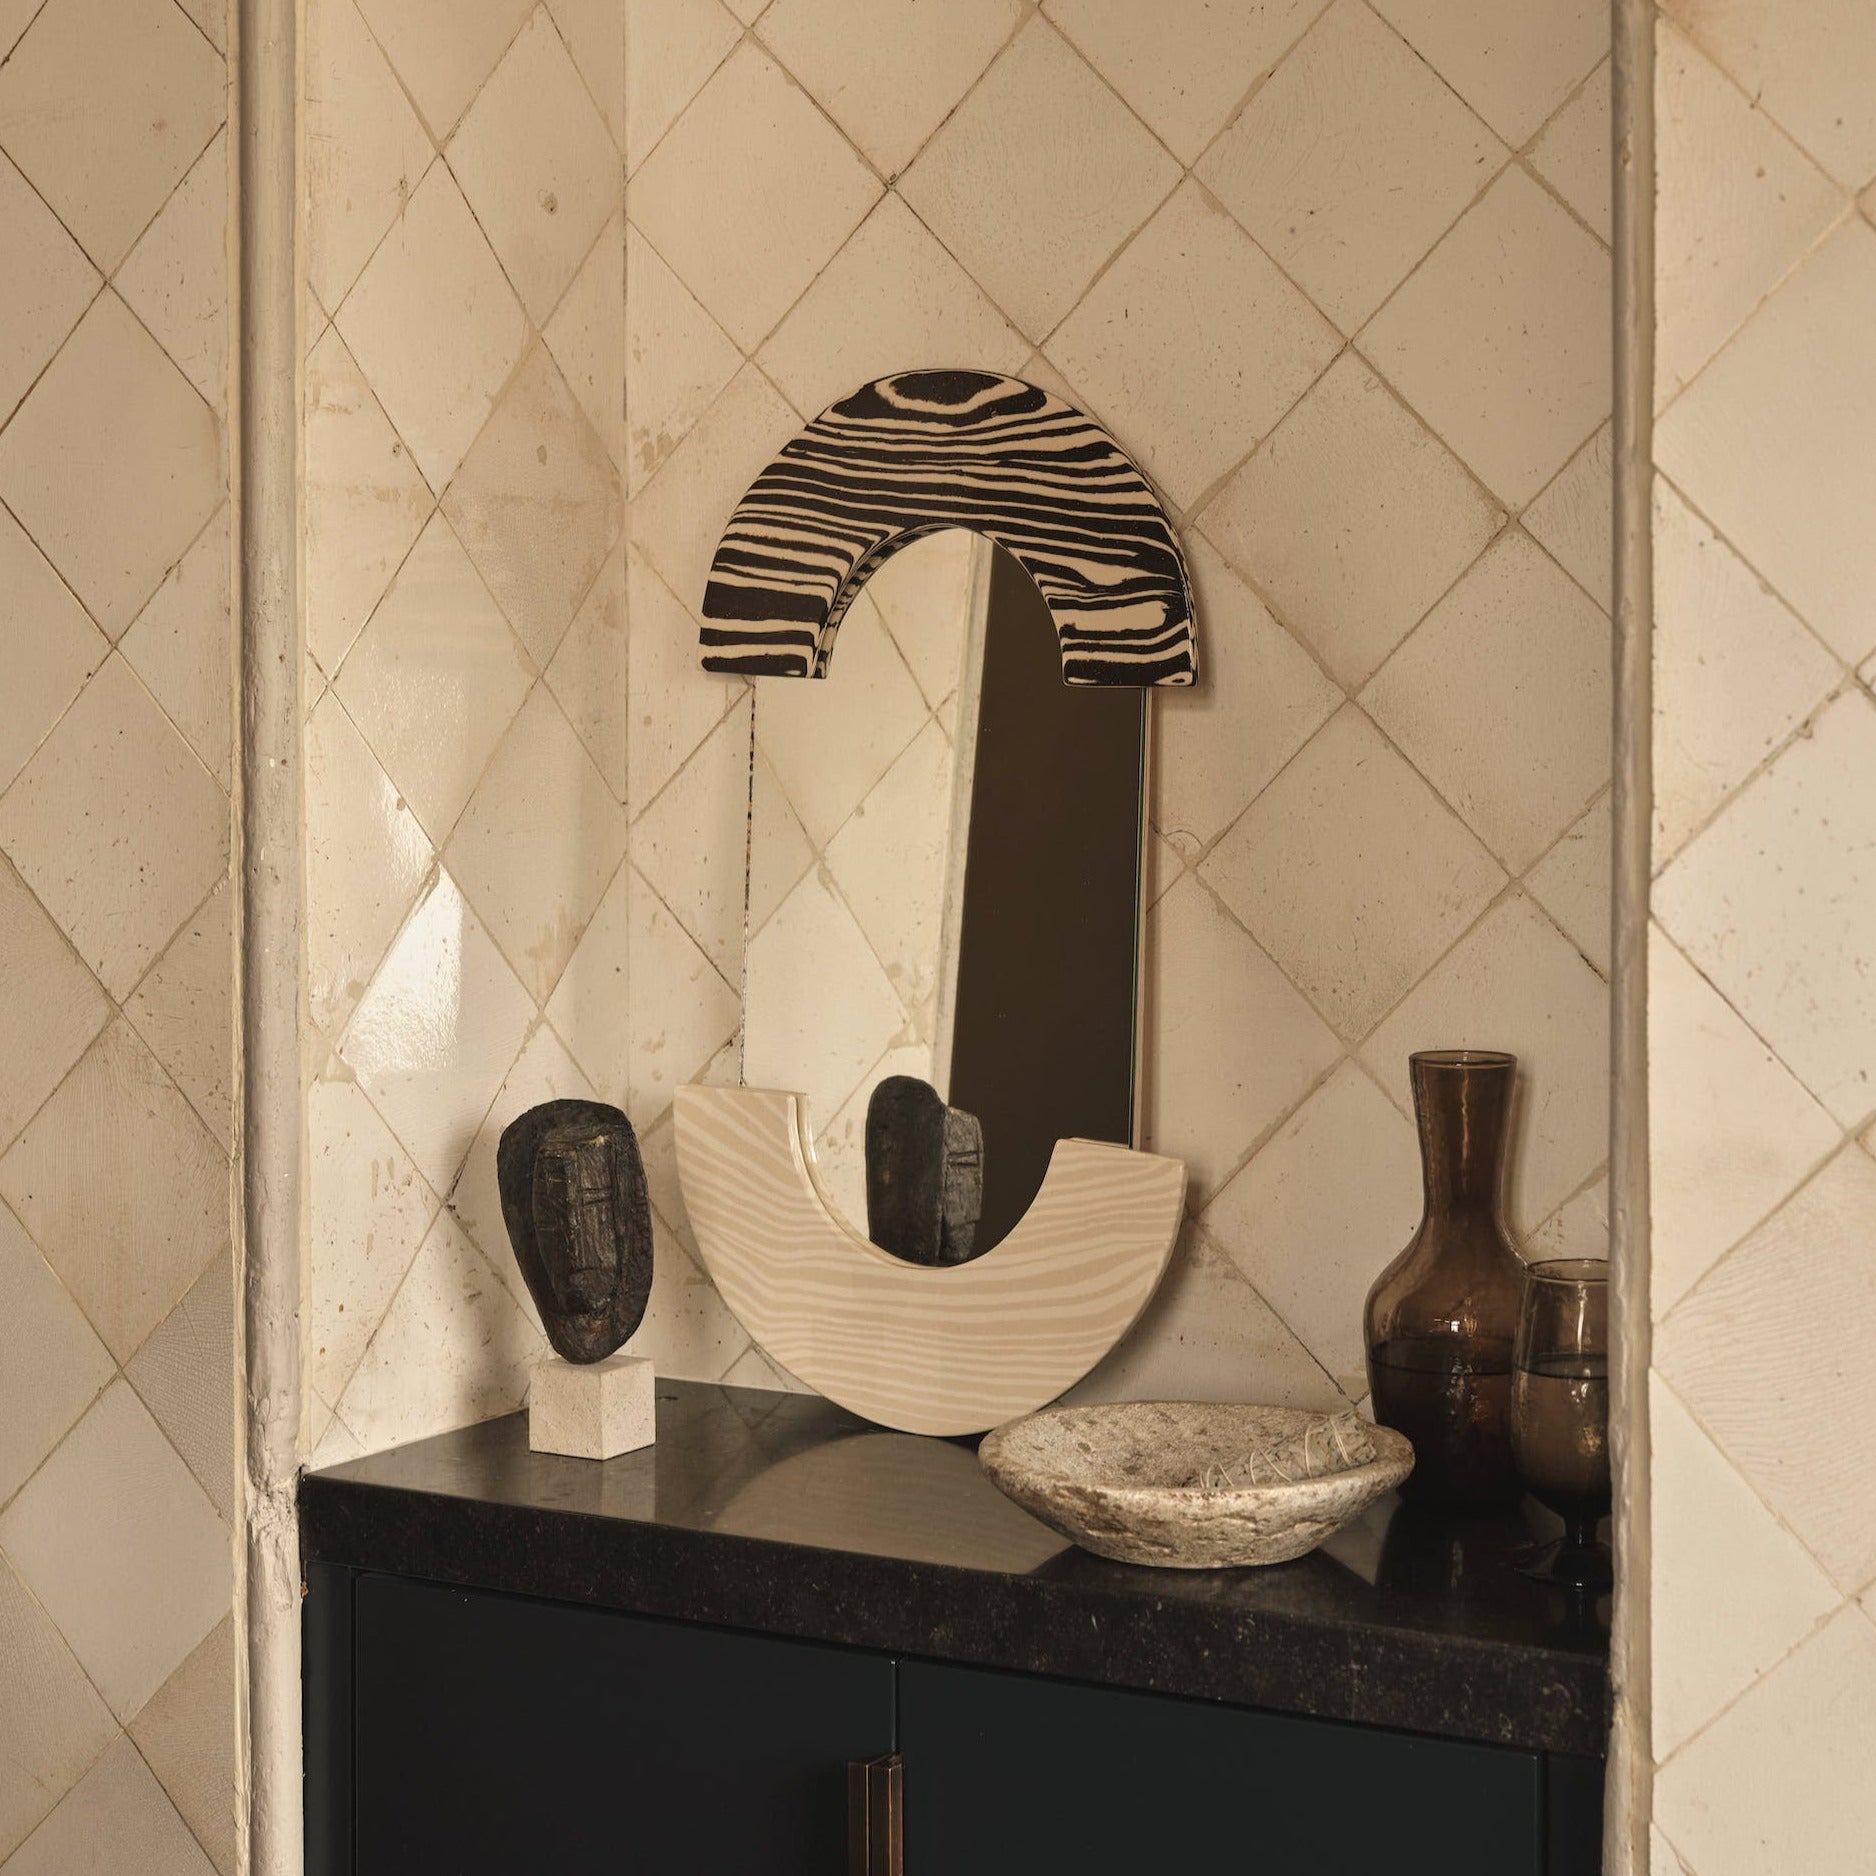 BiColoured Brown & White "LOZENGE" Ceramic Mirror